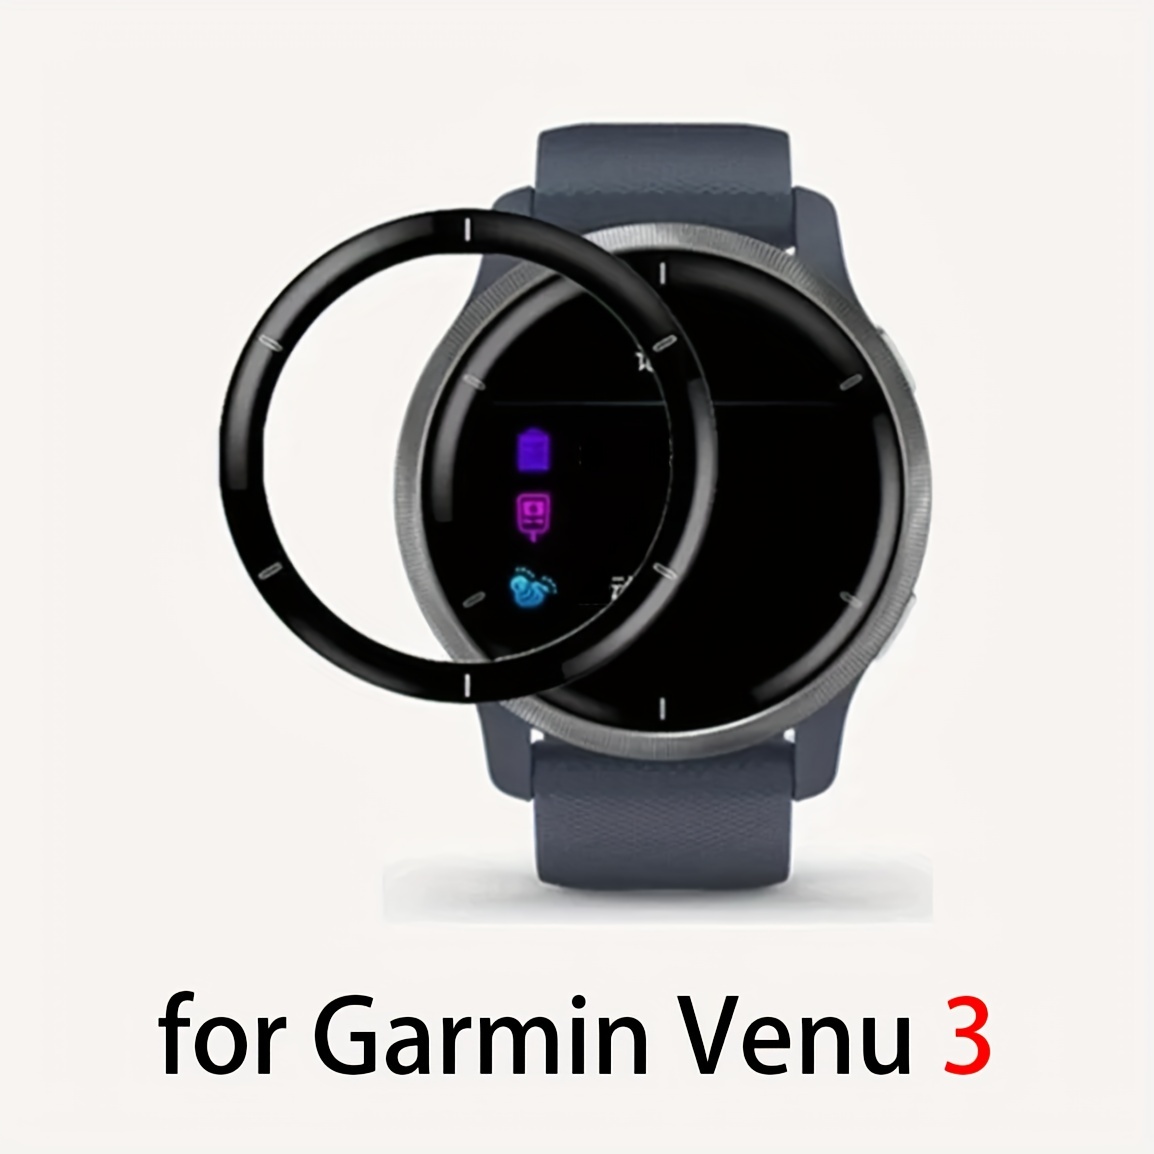 Garmin Vivoactive 5 Screen Protector - Temu Austria